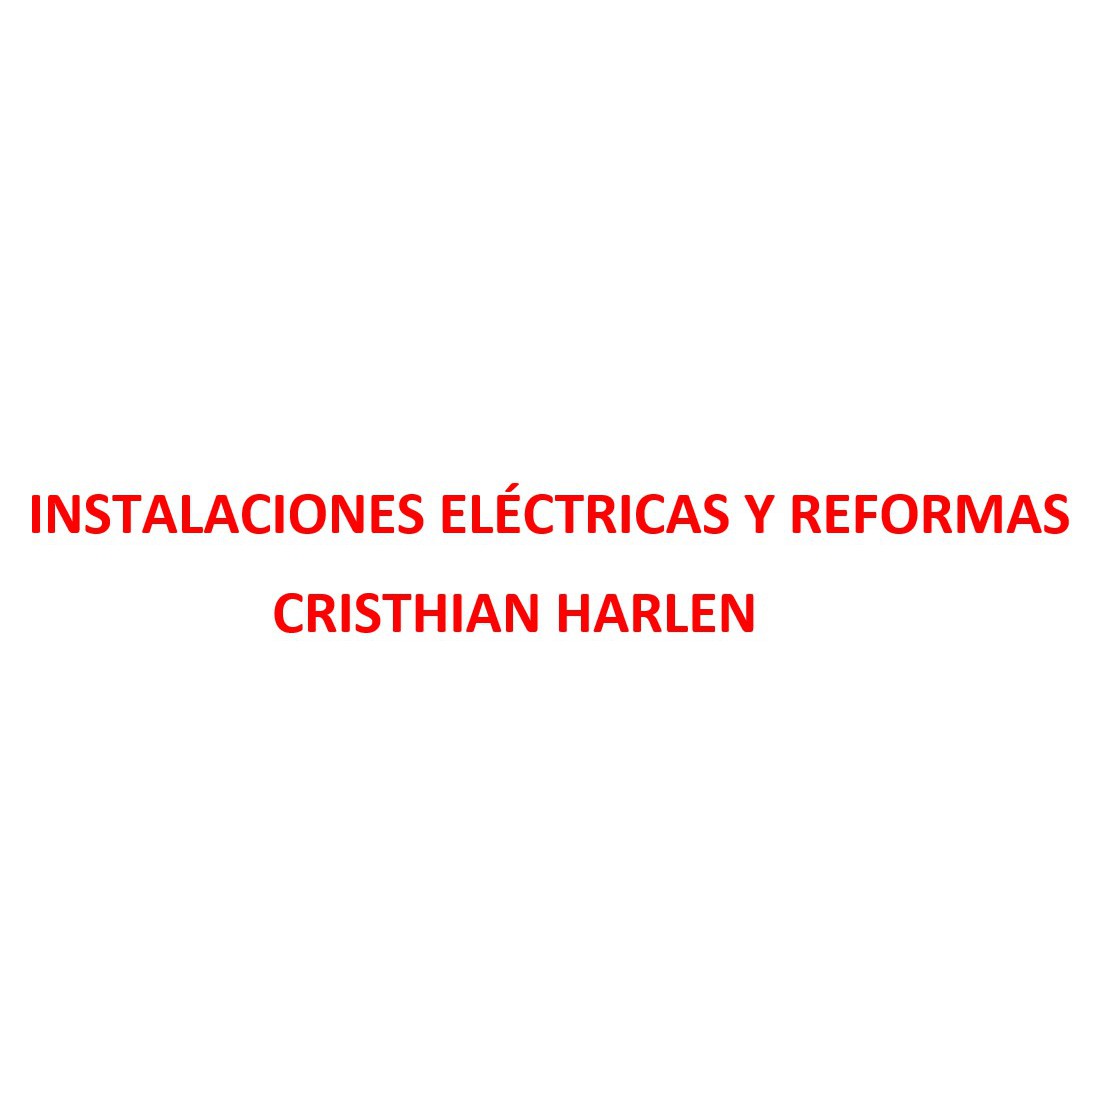 Instalaciones Eléctricas y Reformas Cristhian Harlen- Electricista Urgente 24 horas en Valencia Valencia